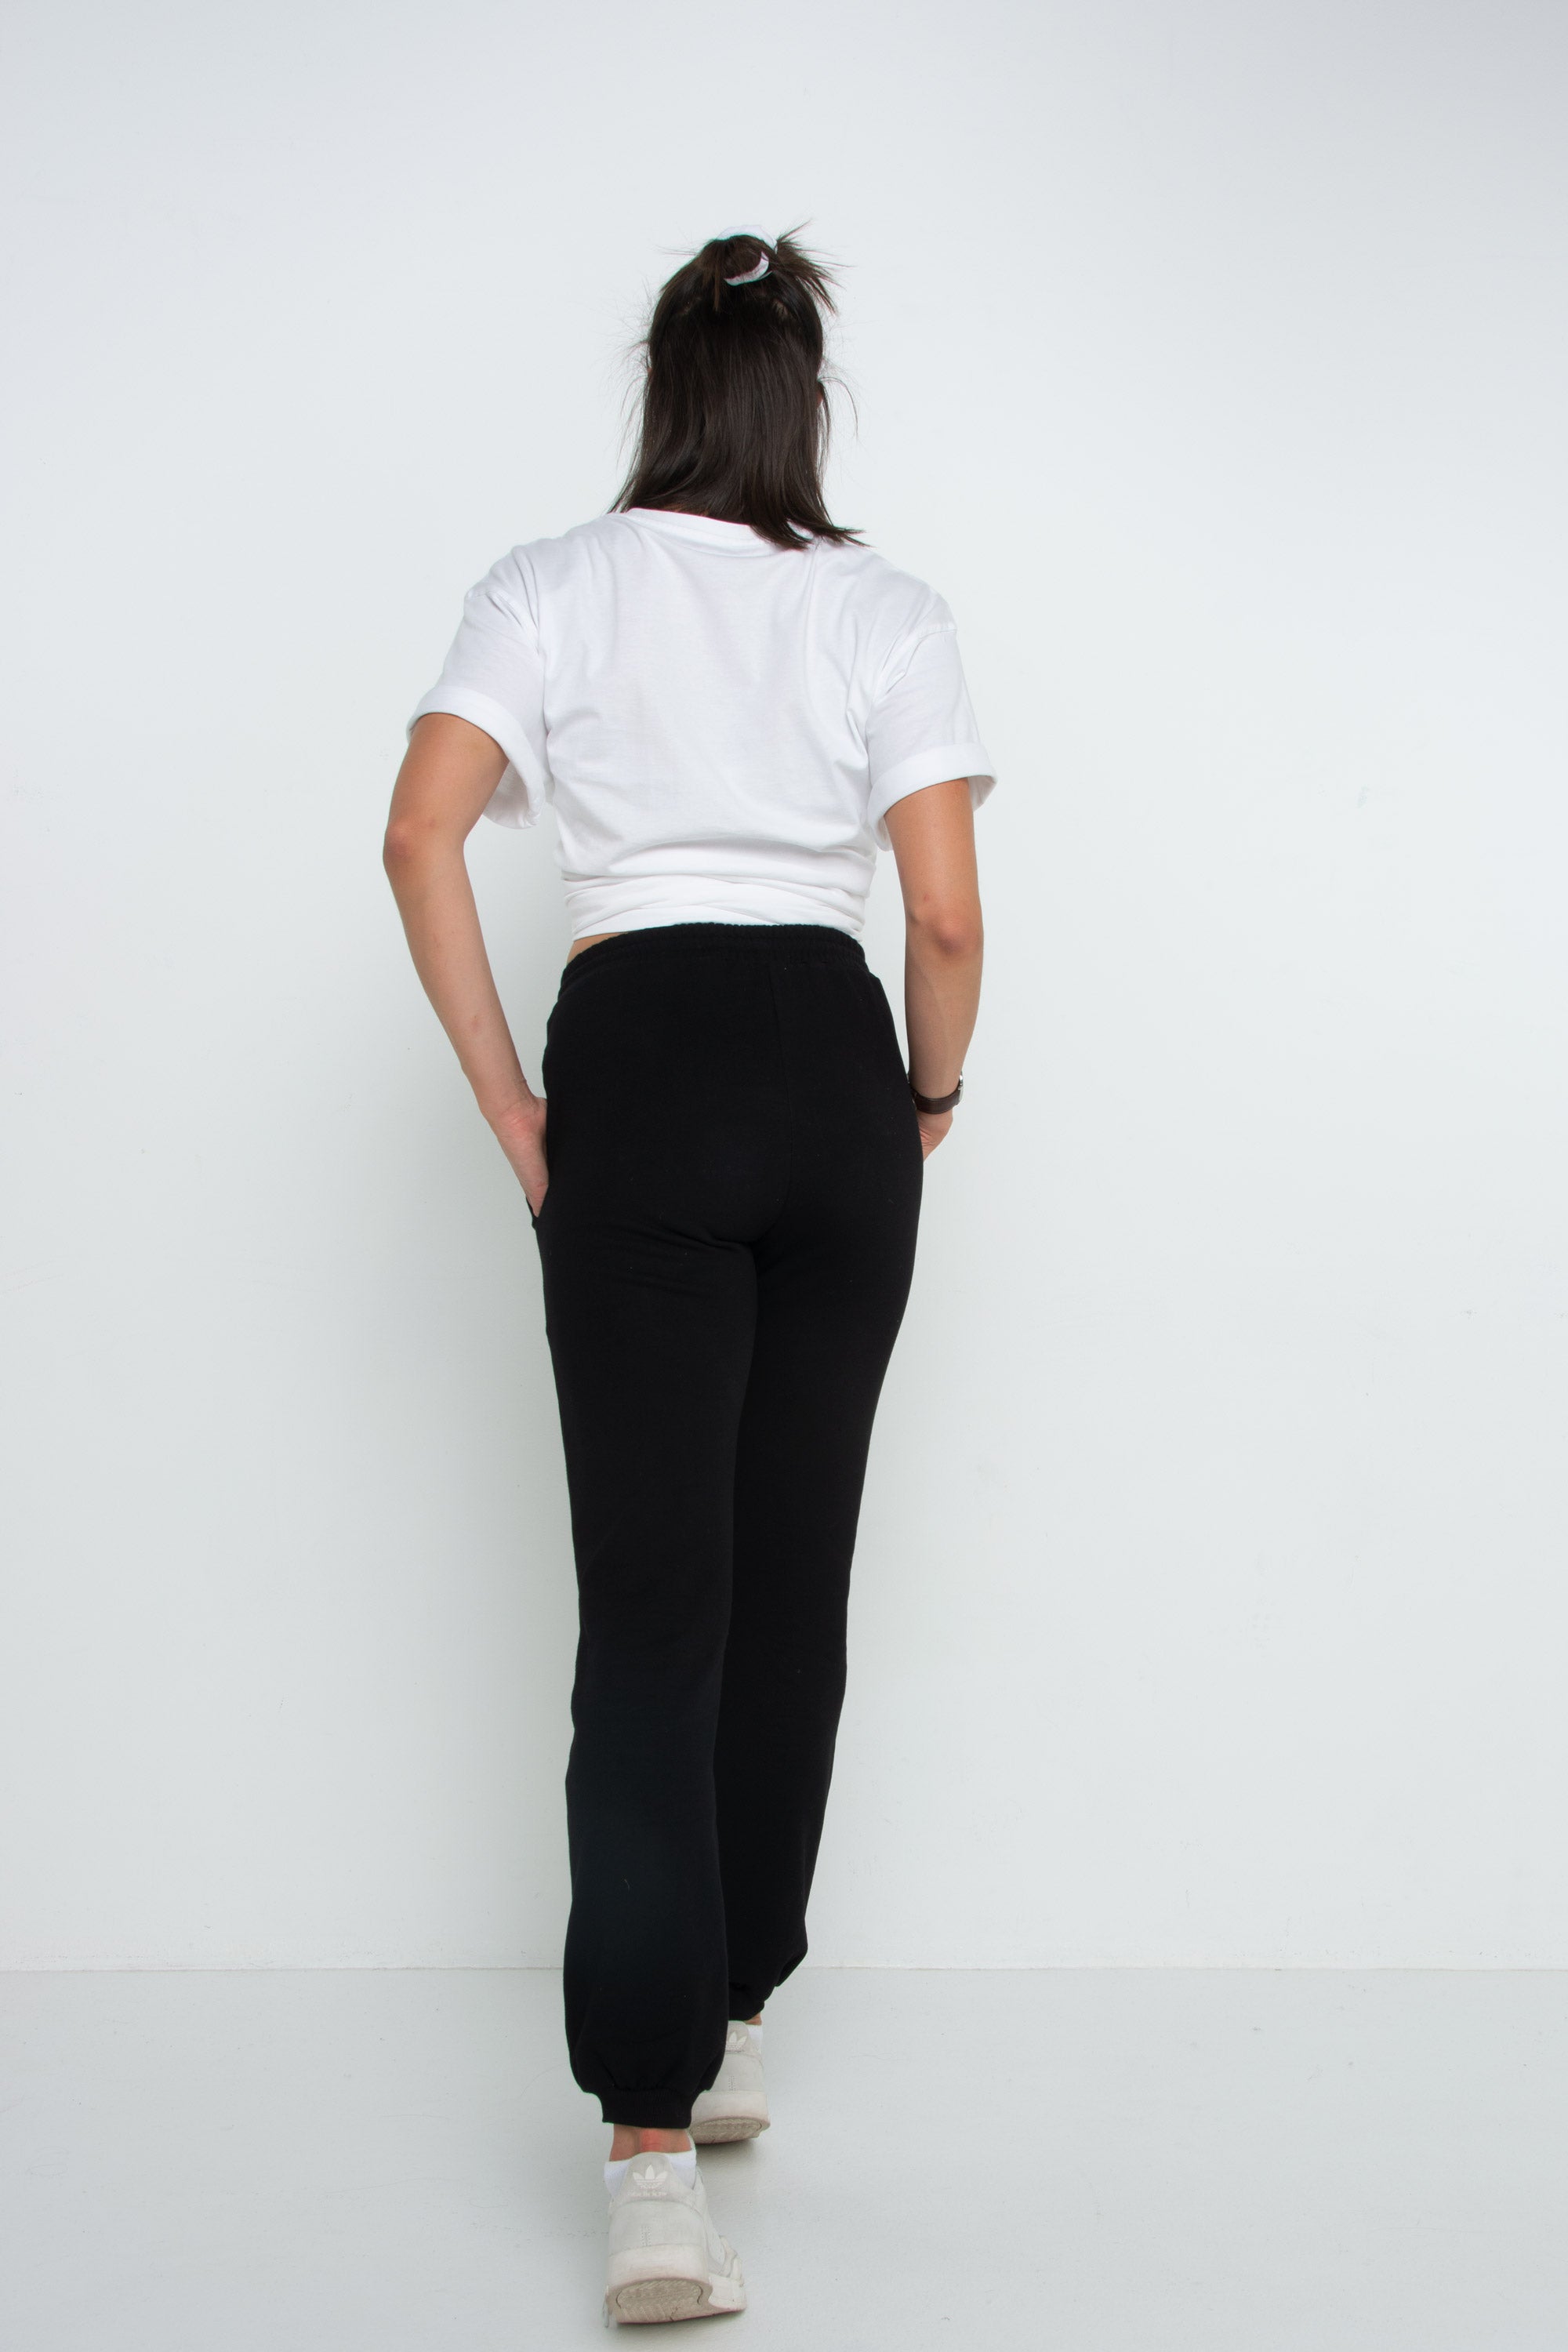 Performance Women's Wear Women Black Track Pants S | eBay